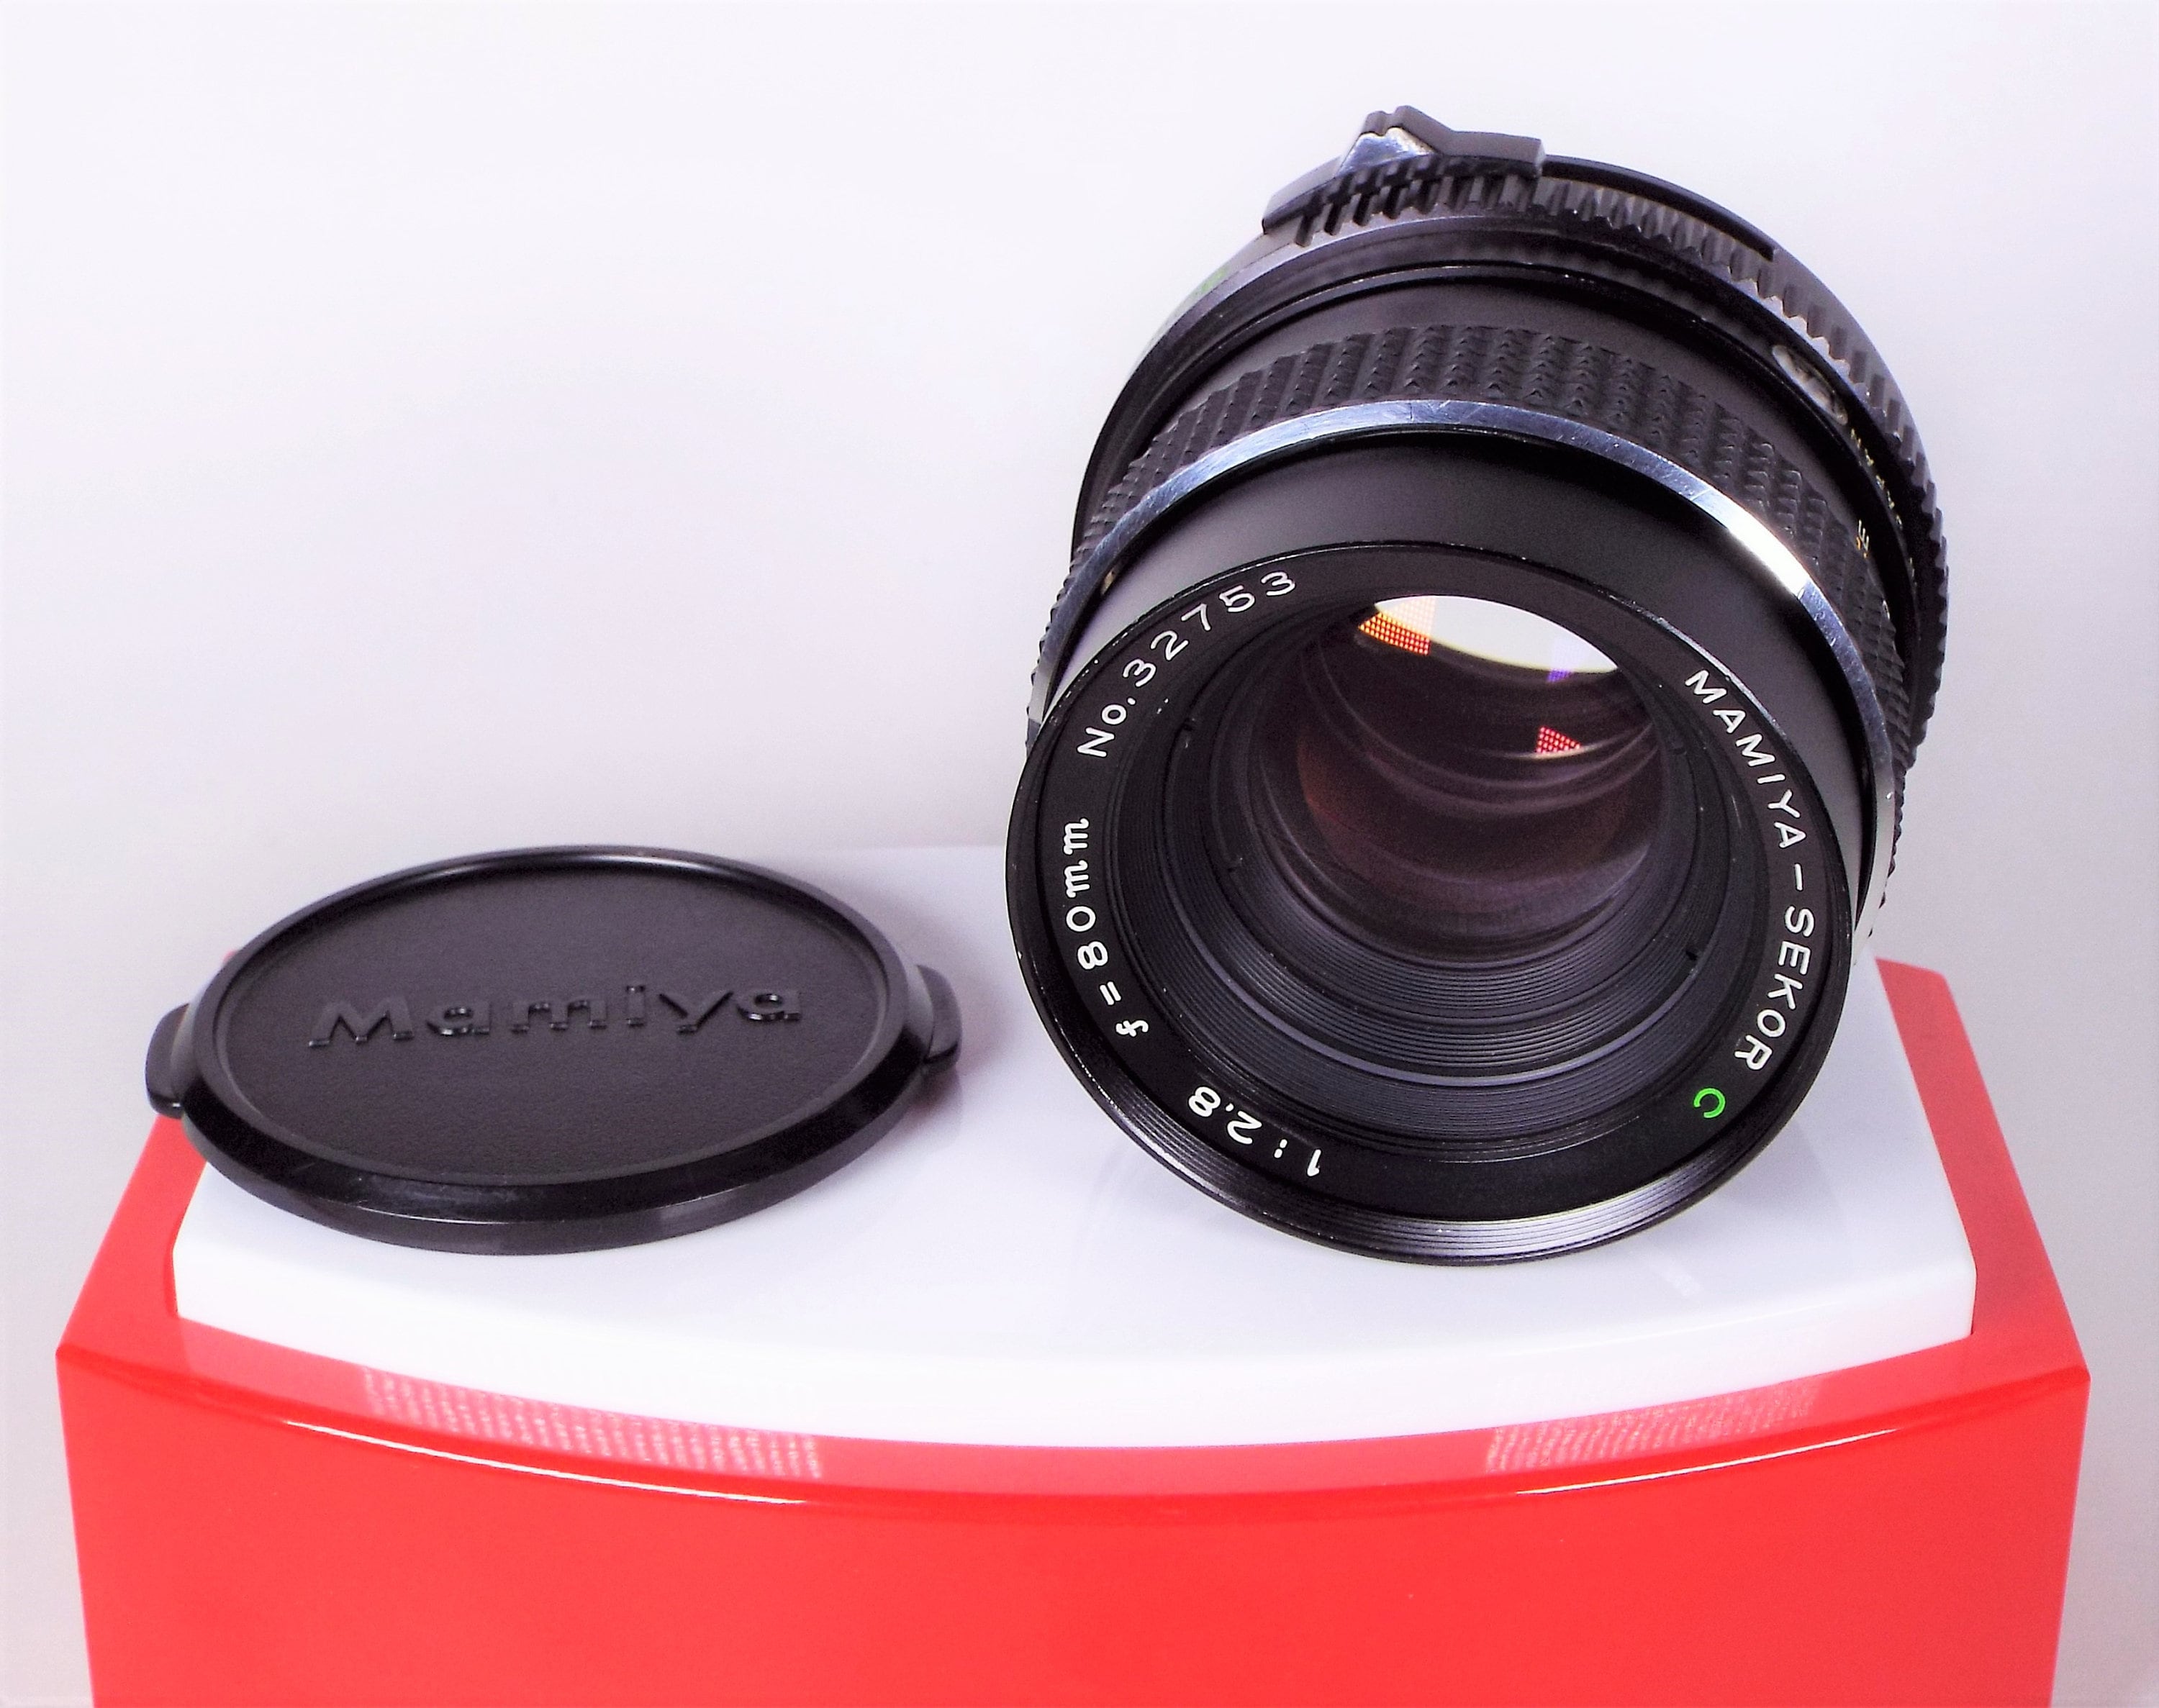 Mamiya-Sekor C f/2.8 80mm Lens for the M645 Medium Format Film Camera